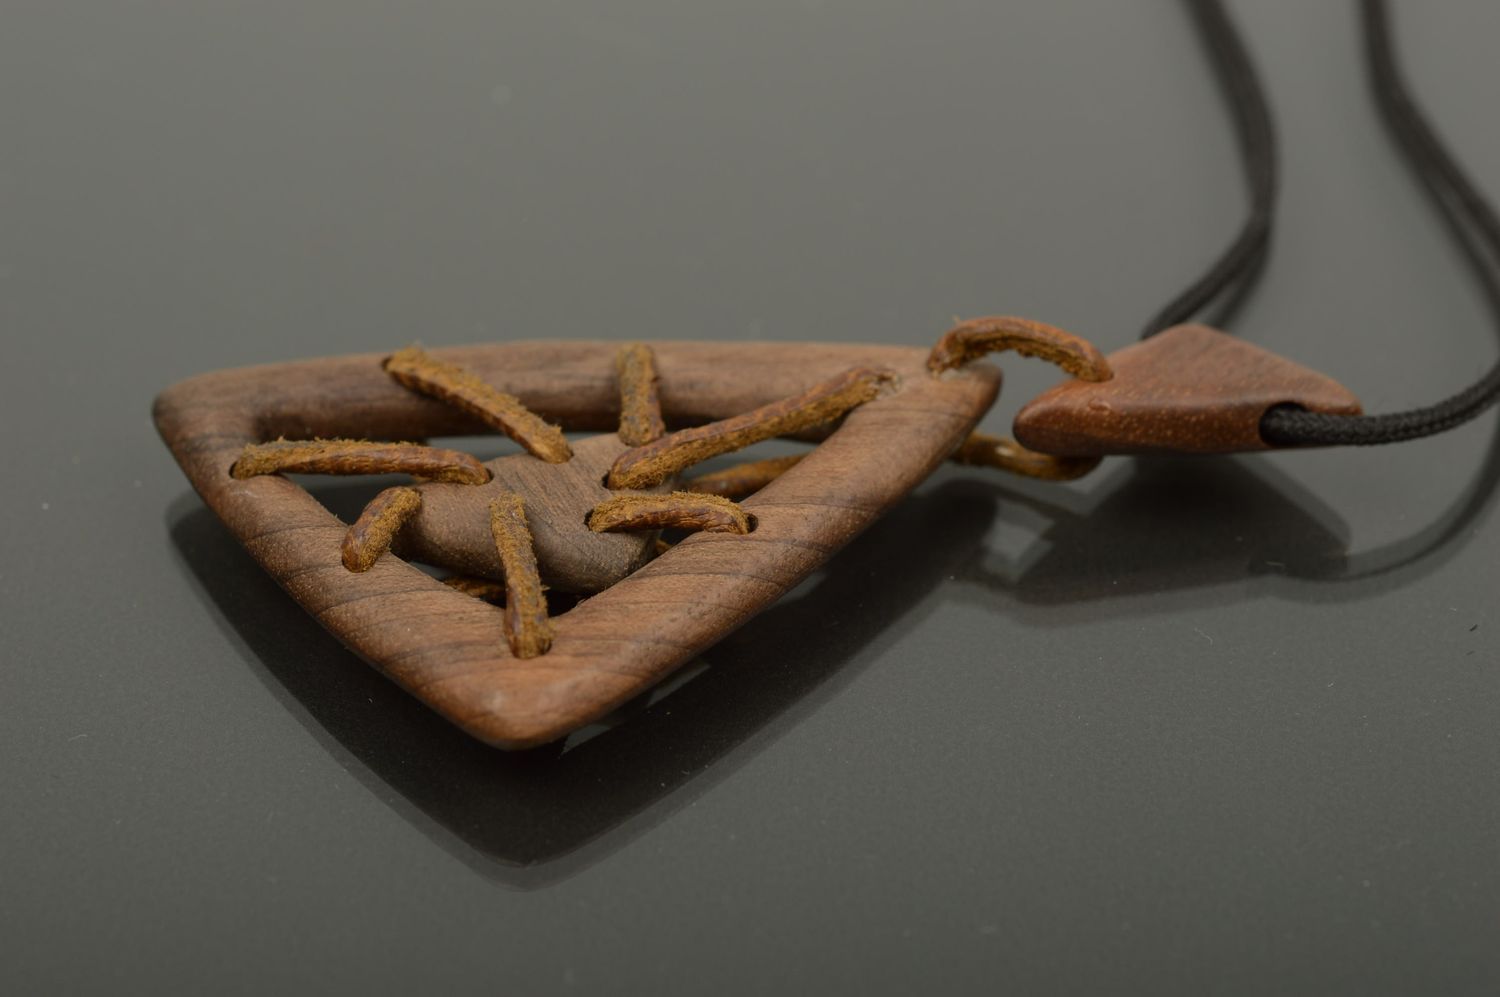 Кулон ручной работы украшение на шею треугольное аксессуар из дерева на шнурке фото 1